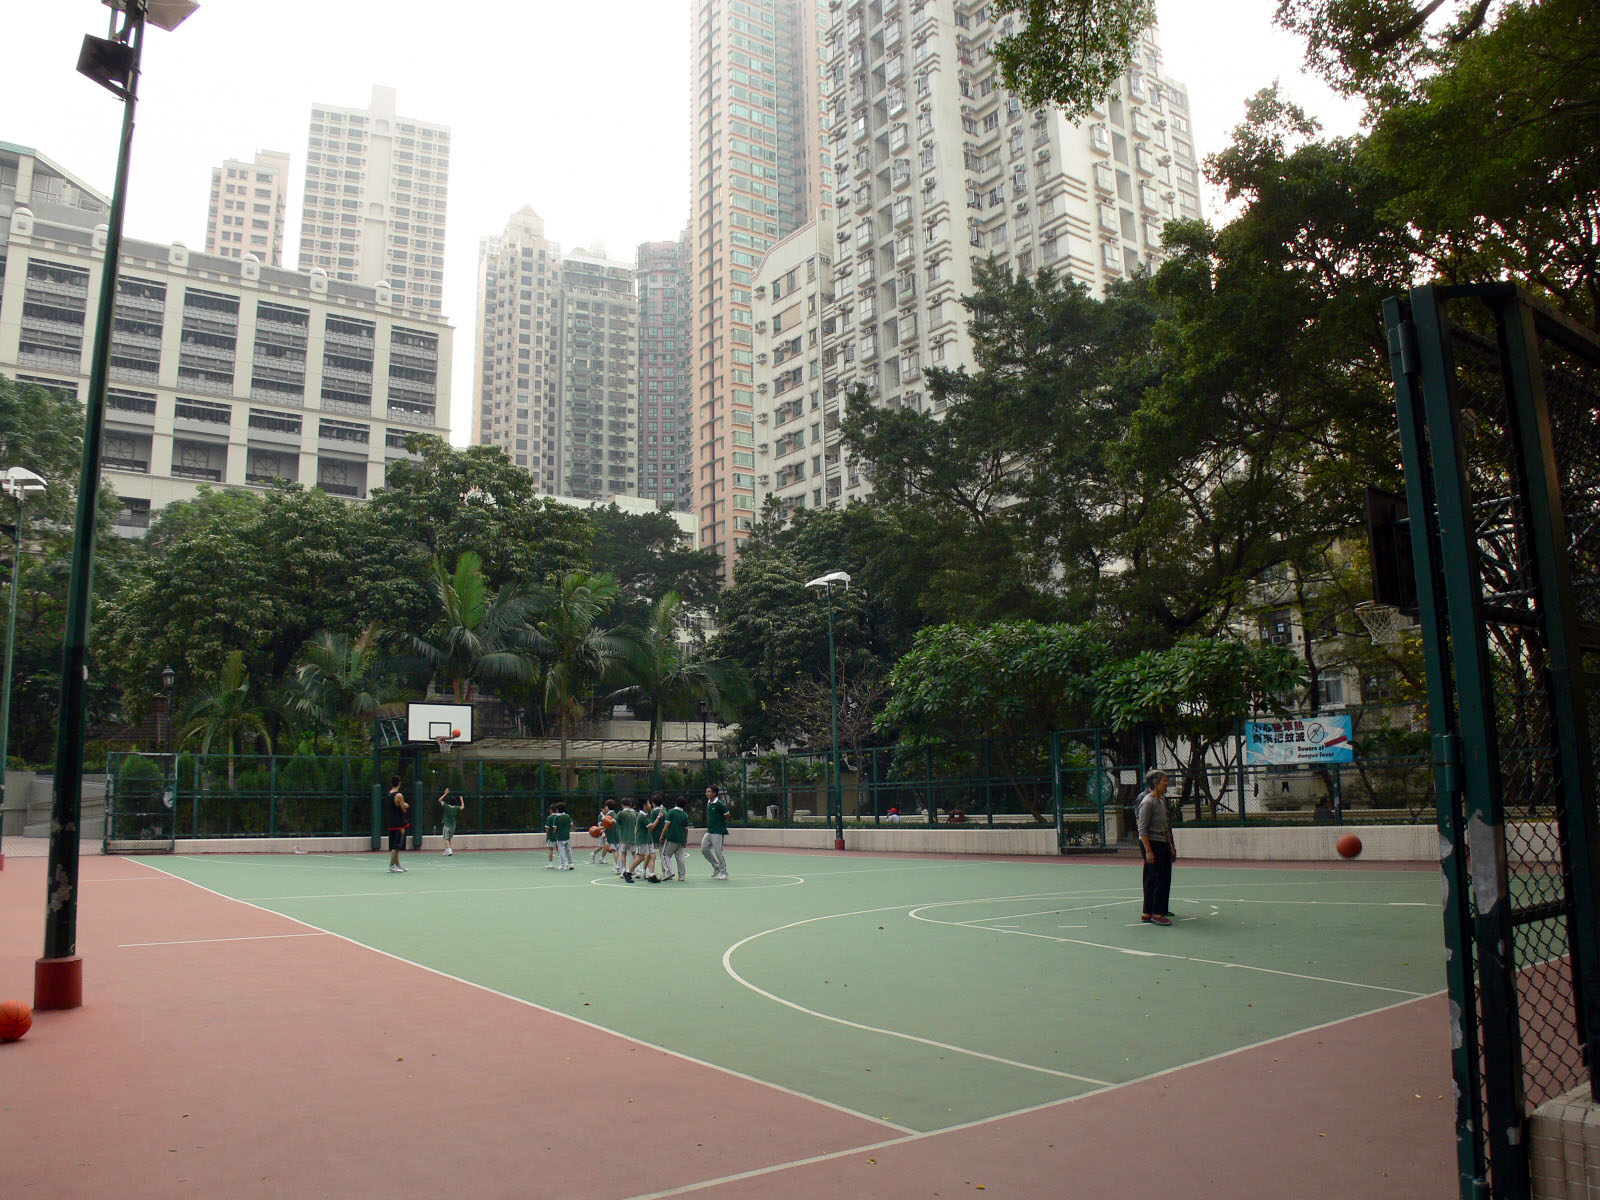 相片 12: 香港佐治五世紀念公園